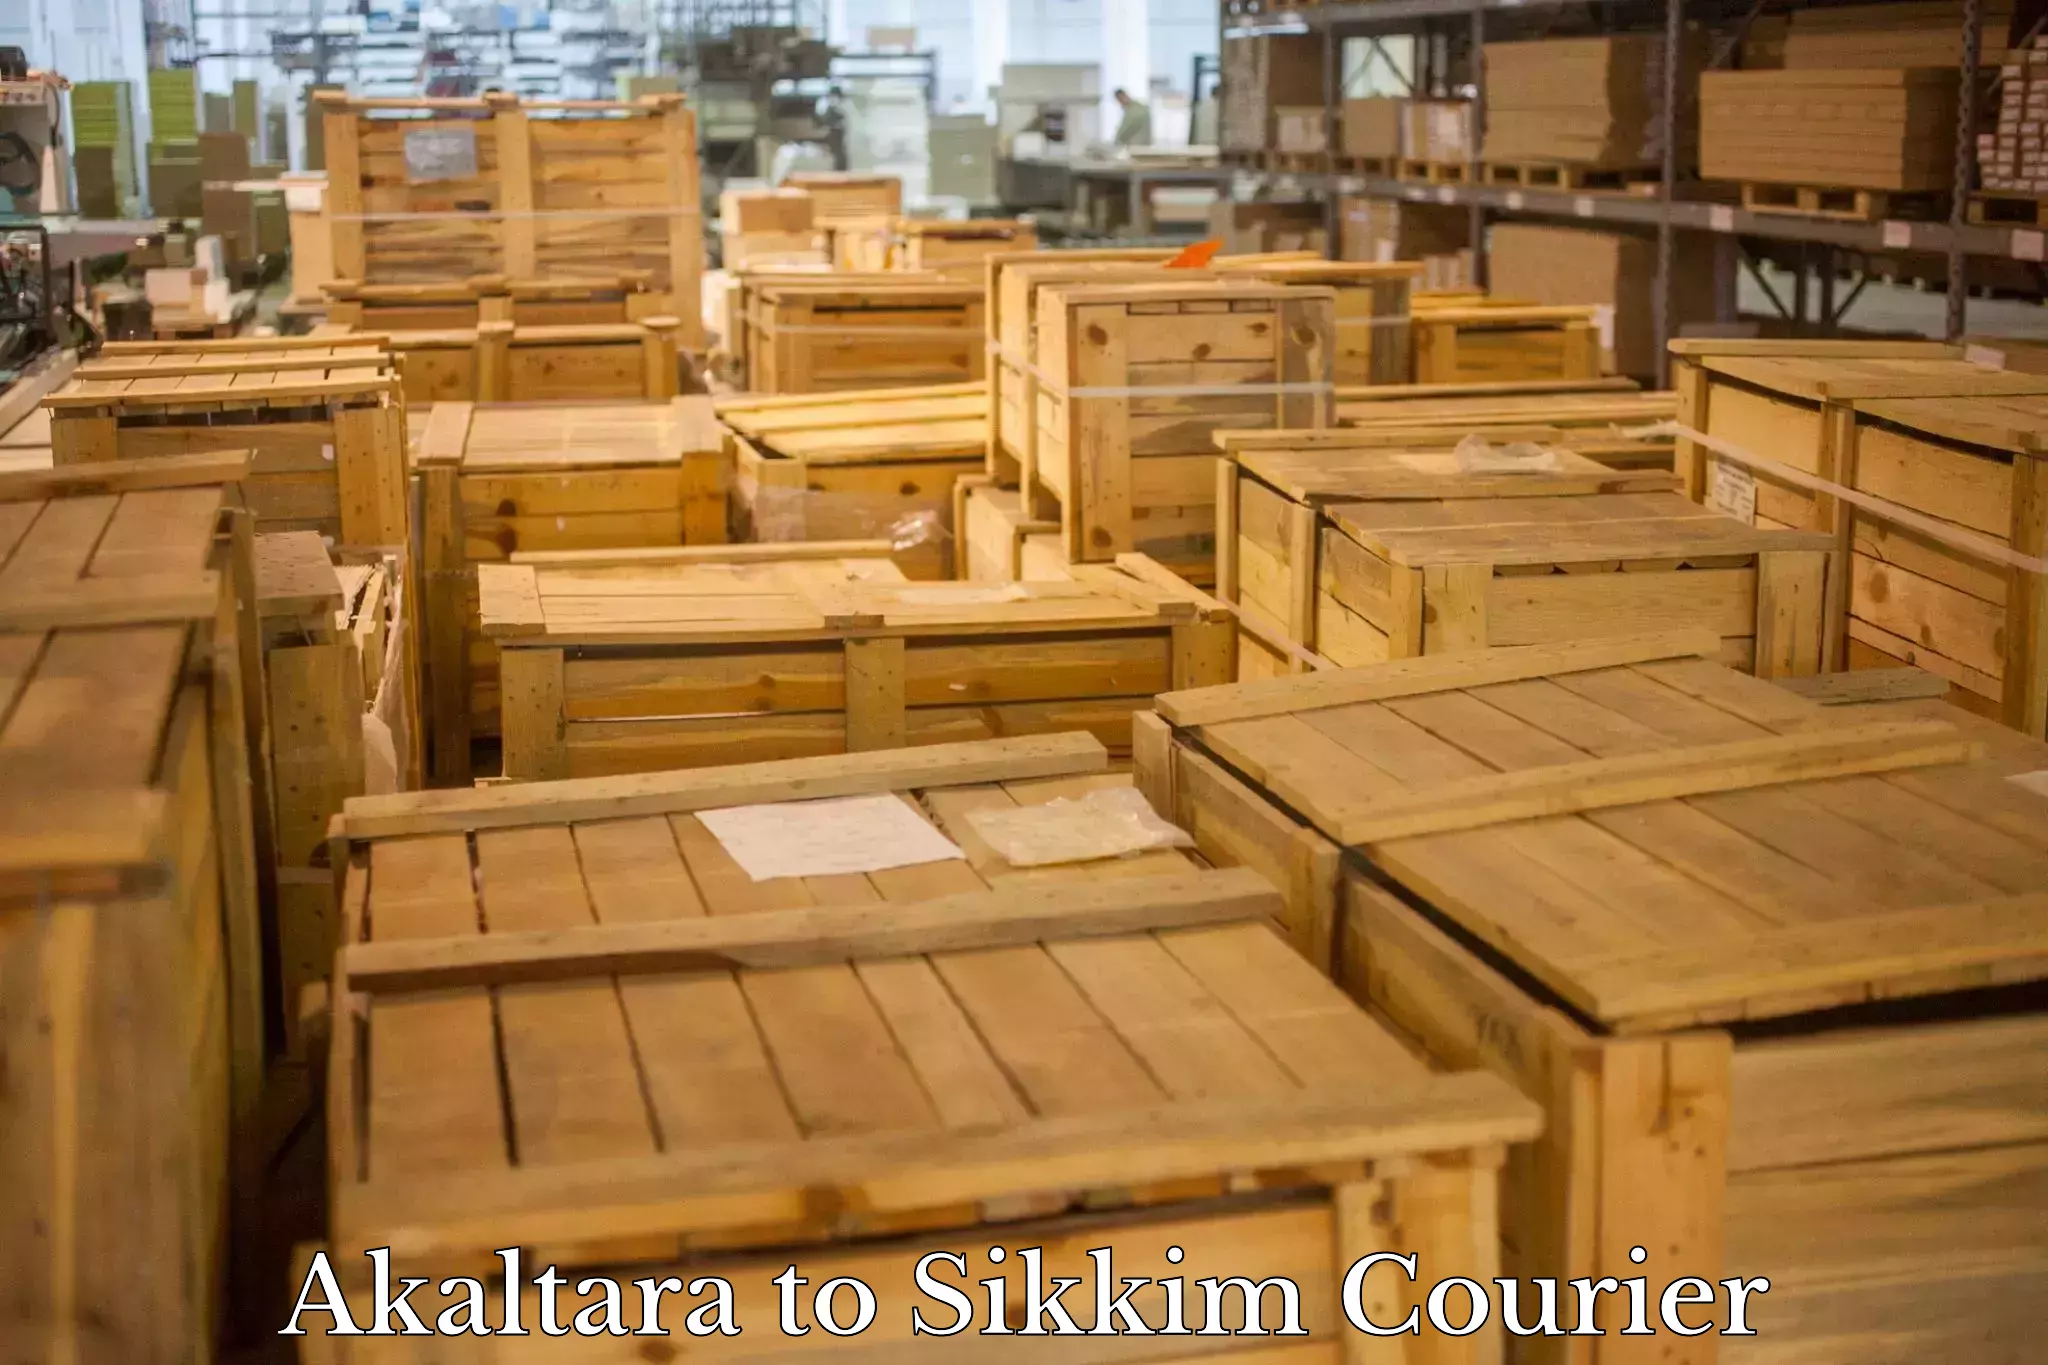 Urban courier service Akaltara to West Sikkim